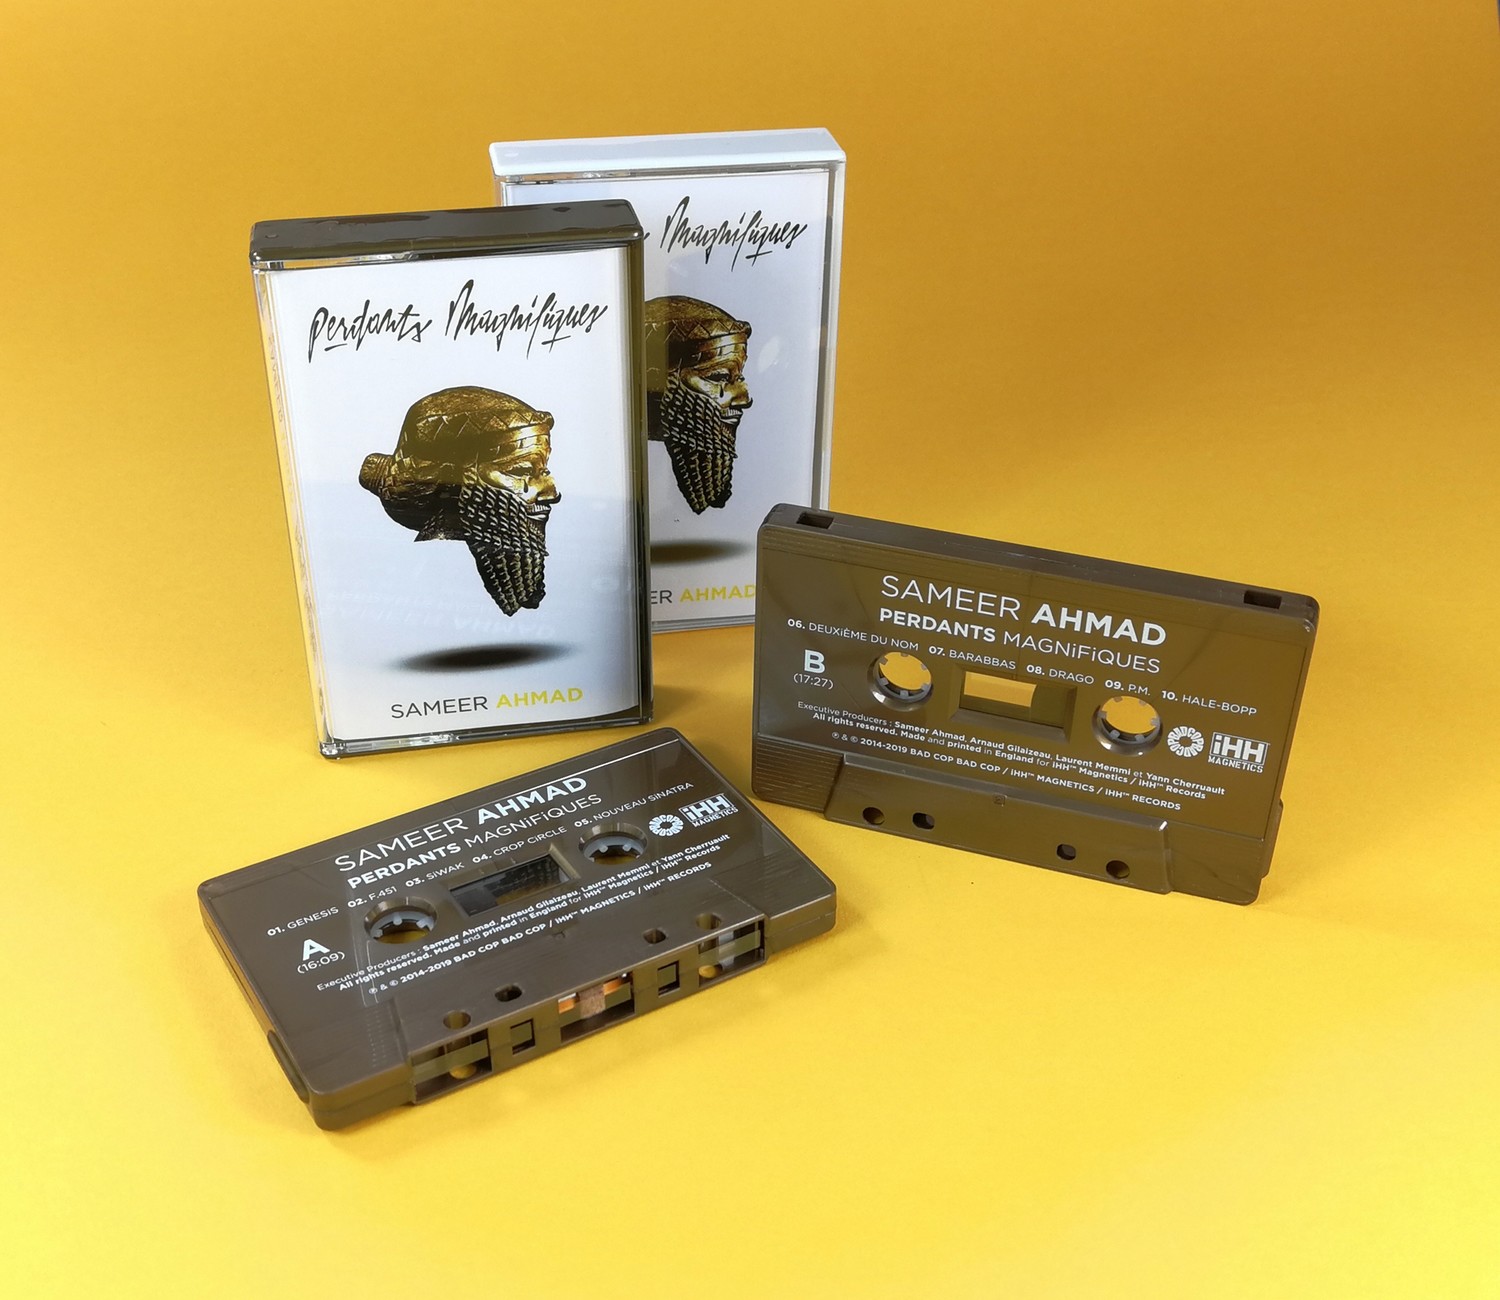 [Cassette] SAMEER AHMAD "Perdants Magnifiques"
L'immense classique du MC de Montpellier enfin disponible en cassette couleur bronze. Édition limitée à 100 exemplaires. 50 boîtiers blanc, 50 bronze